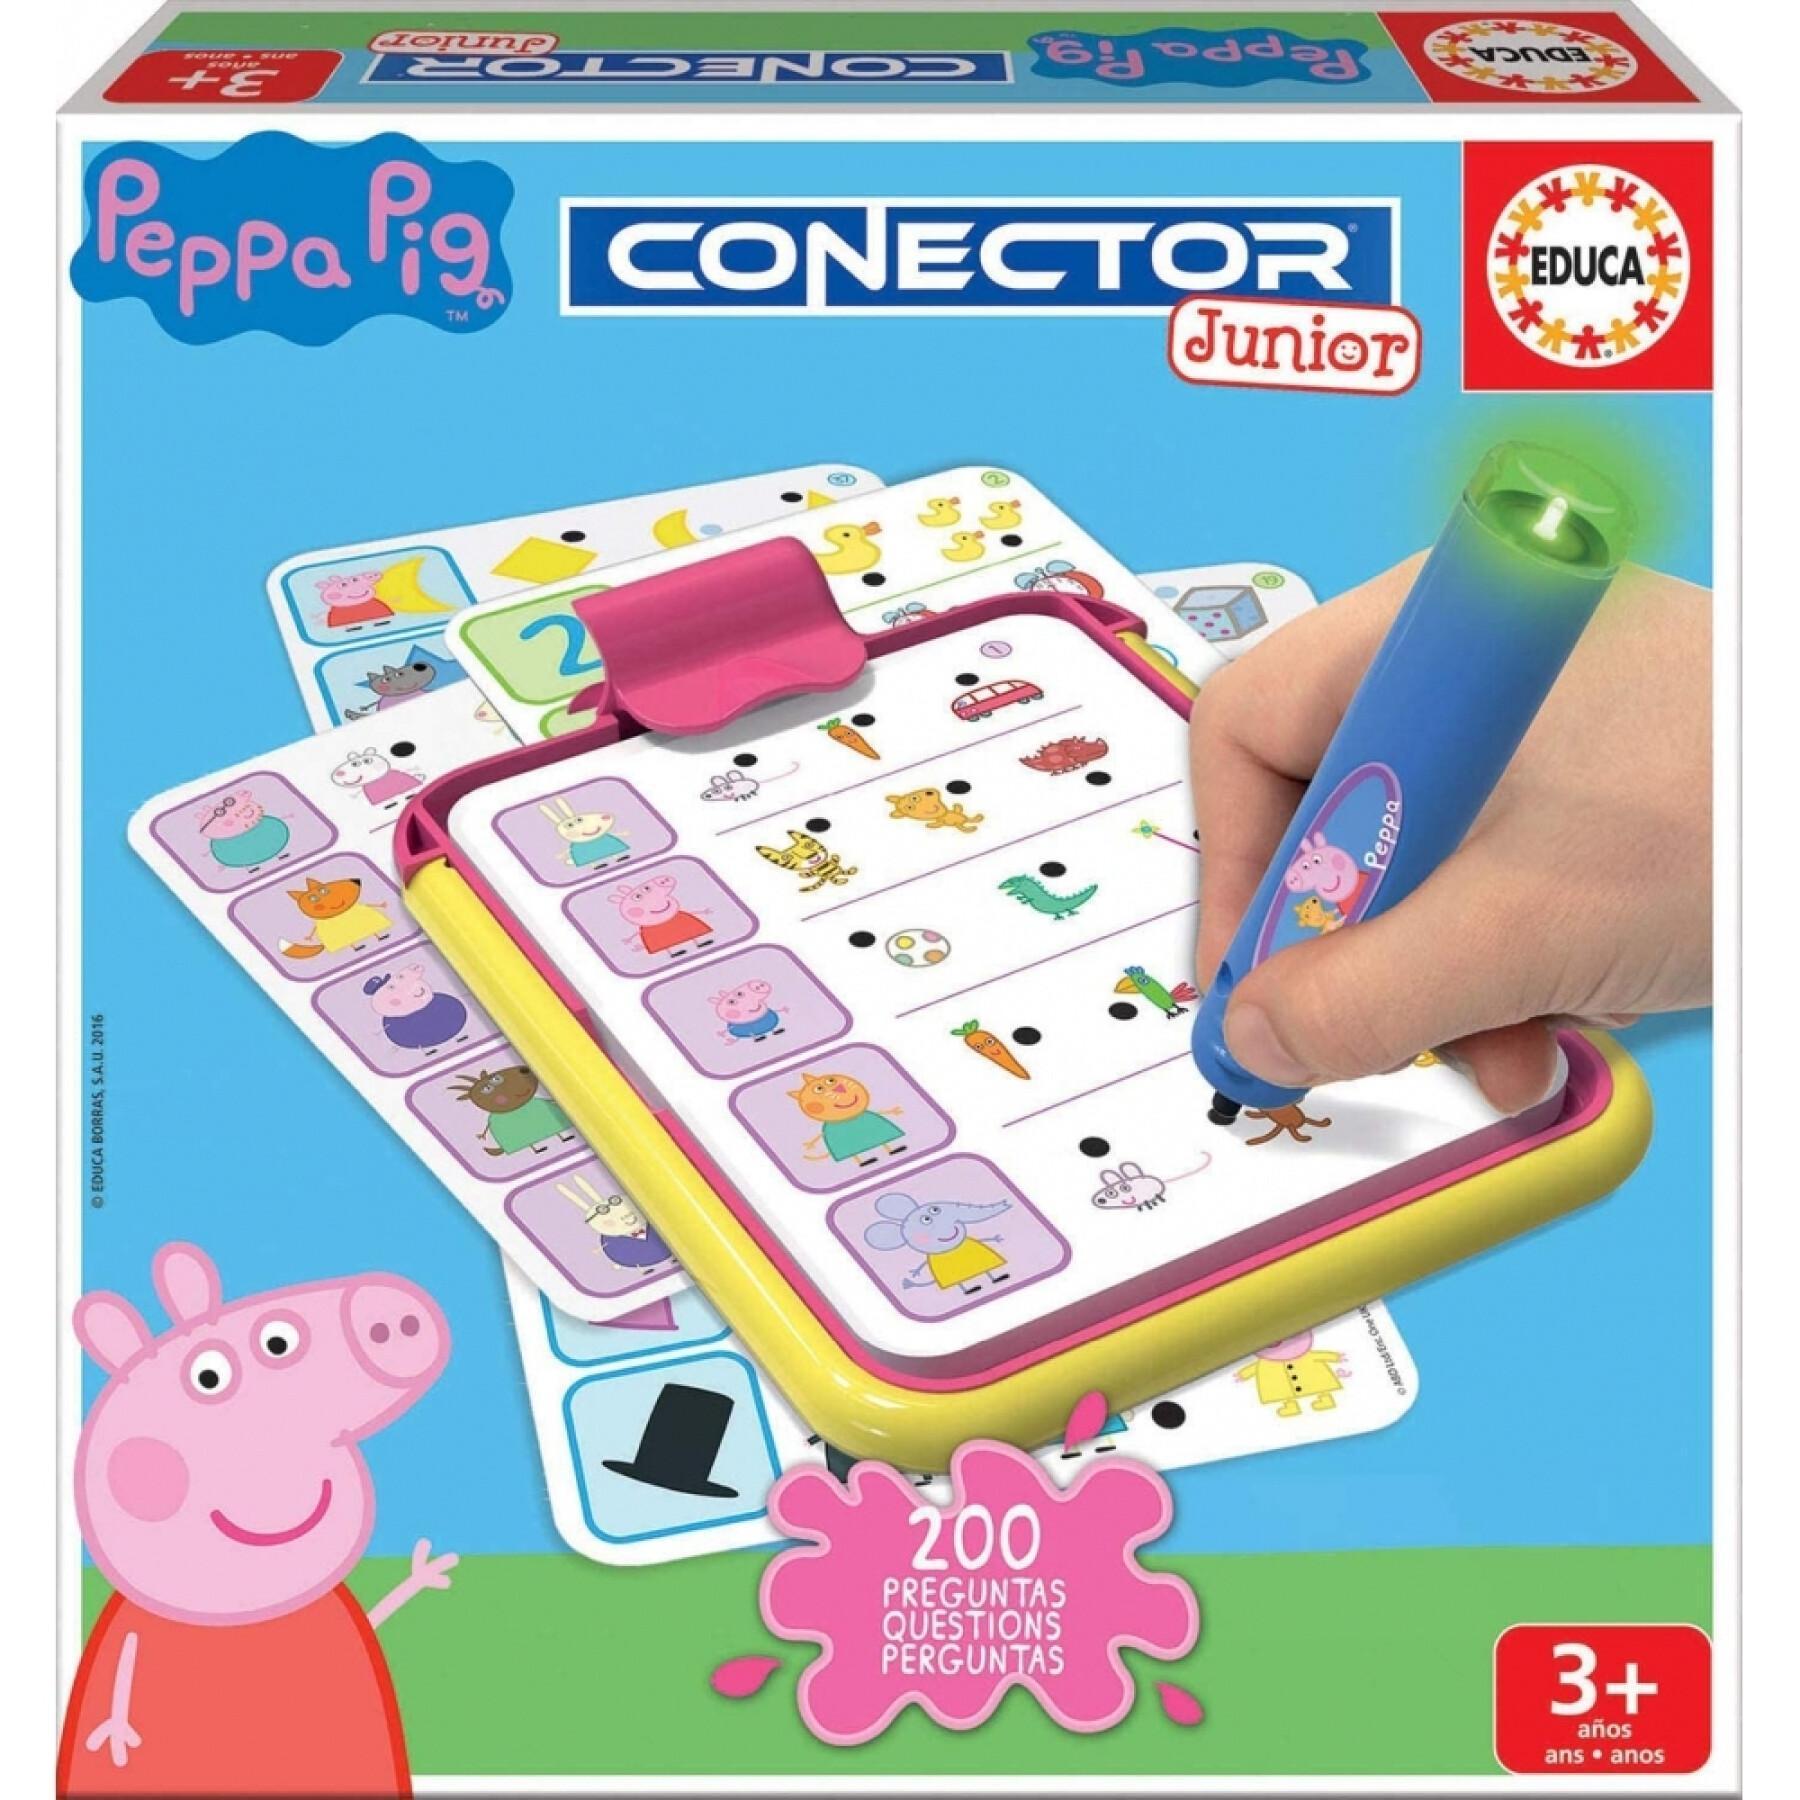 Lernspiele mit Fragen und Antworten Peppa Pig Connector